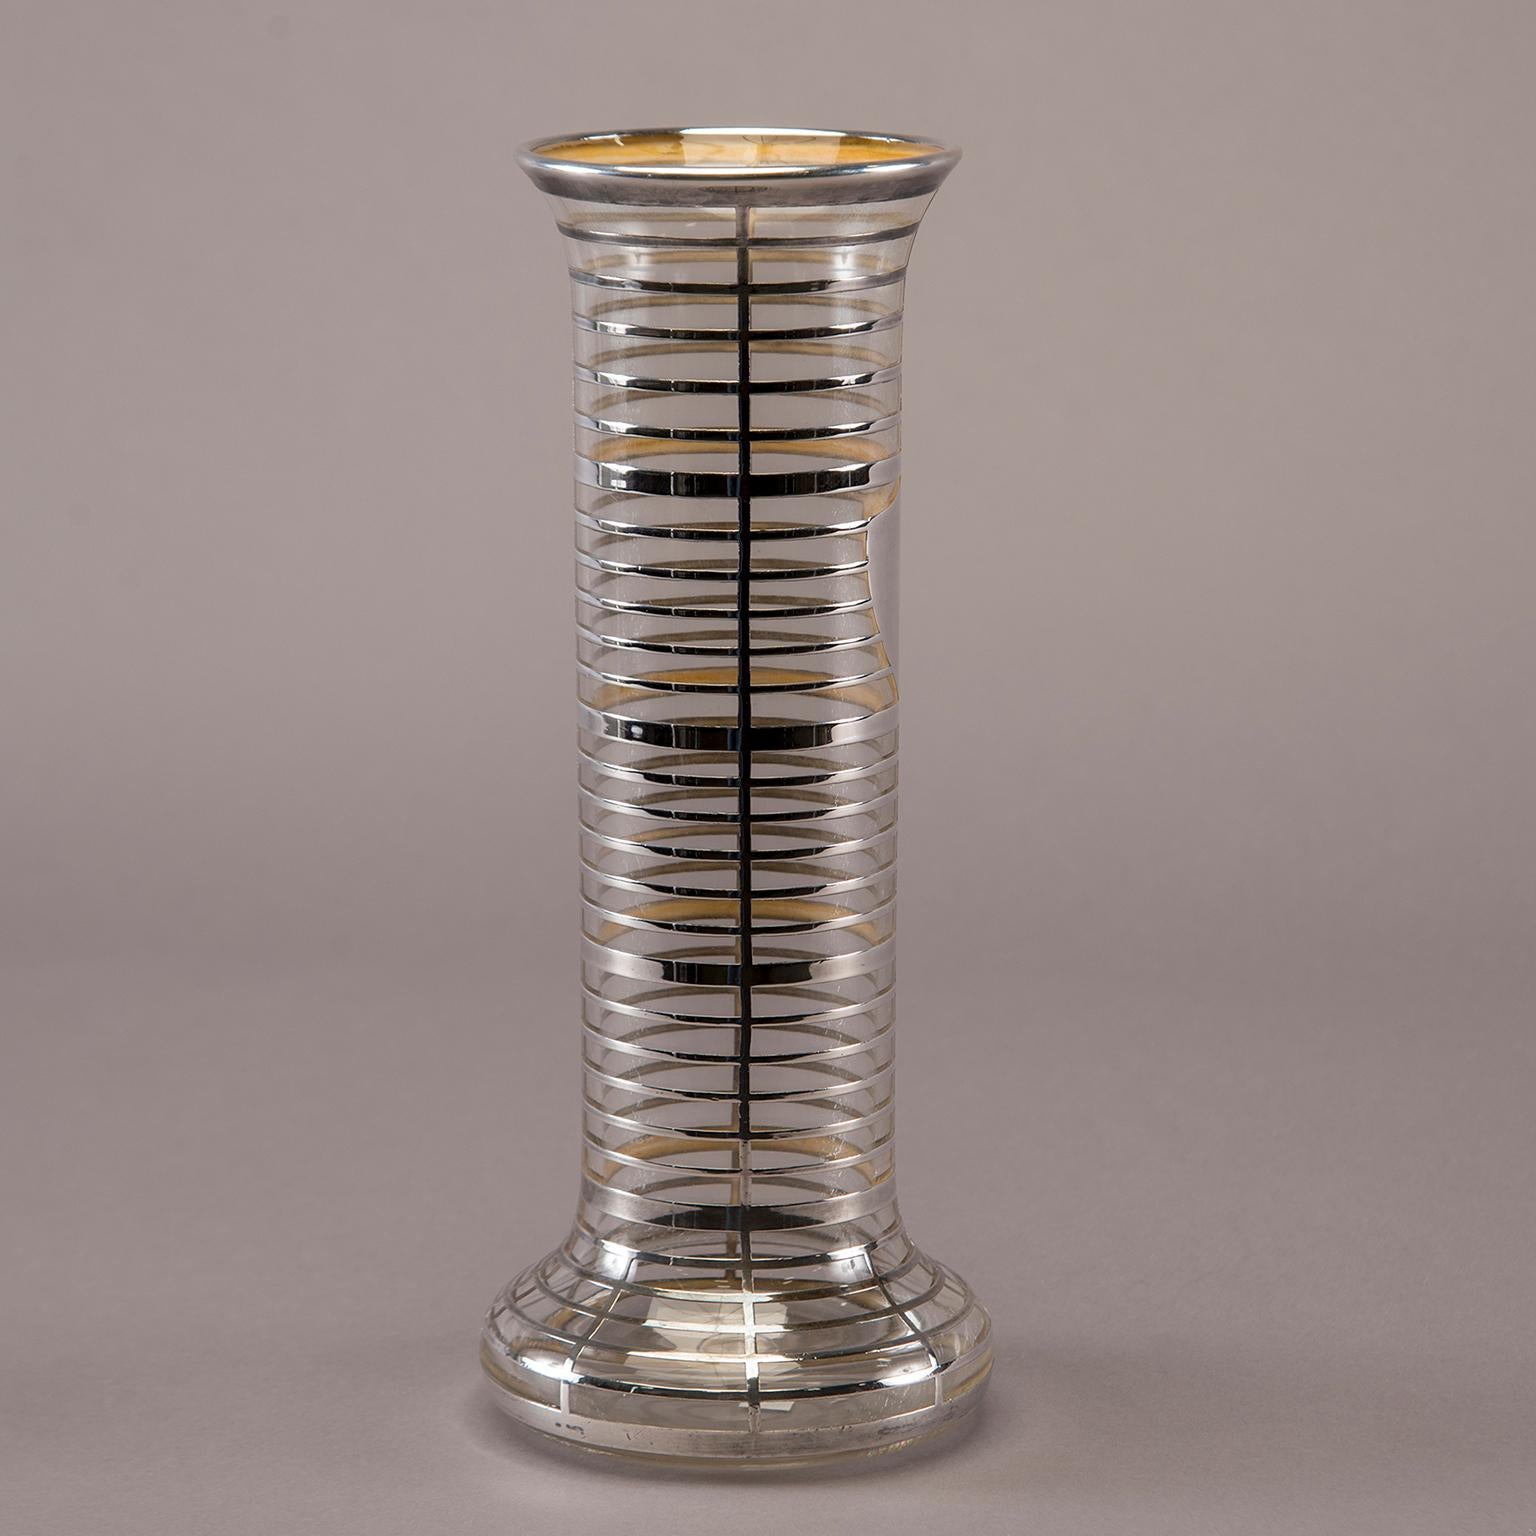 Hohe Vase aus Klarglas mit breitem Sockel und schwerem Silberüberfang in einem Gittermuster mit Schildform, ca. 1940er Jahre. Unbekannter Hersteller.